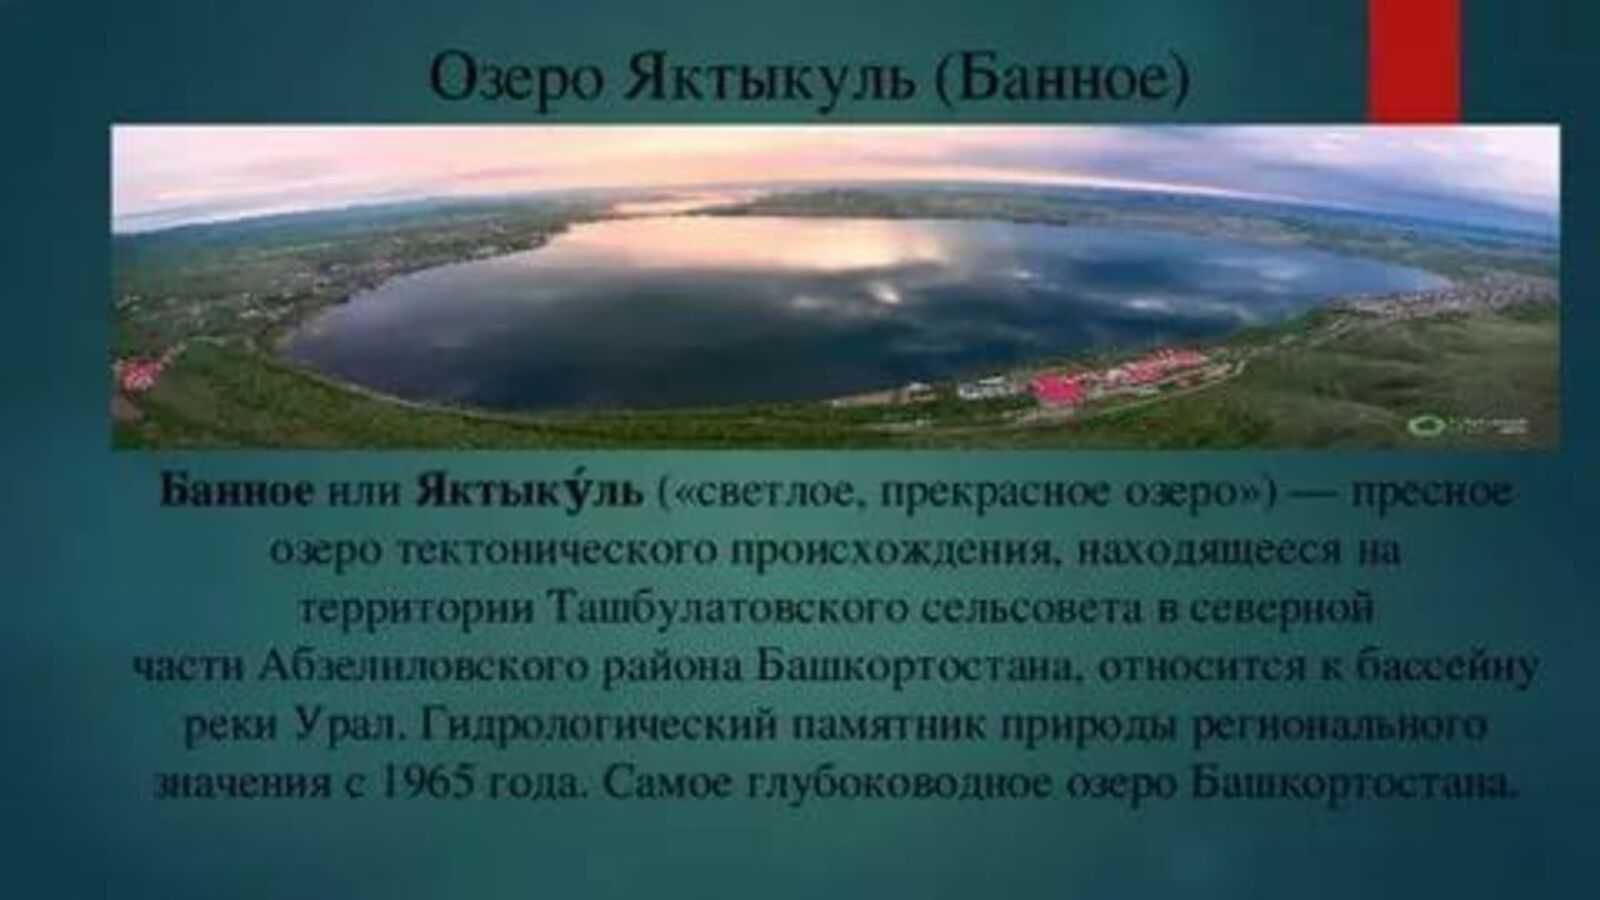 Рыбалка в республике башкортостан: лучшие места на карте топ-10